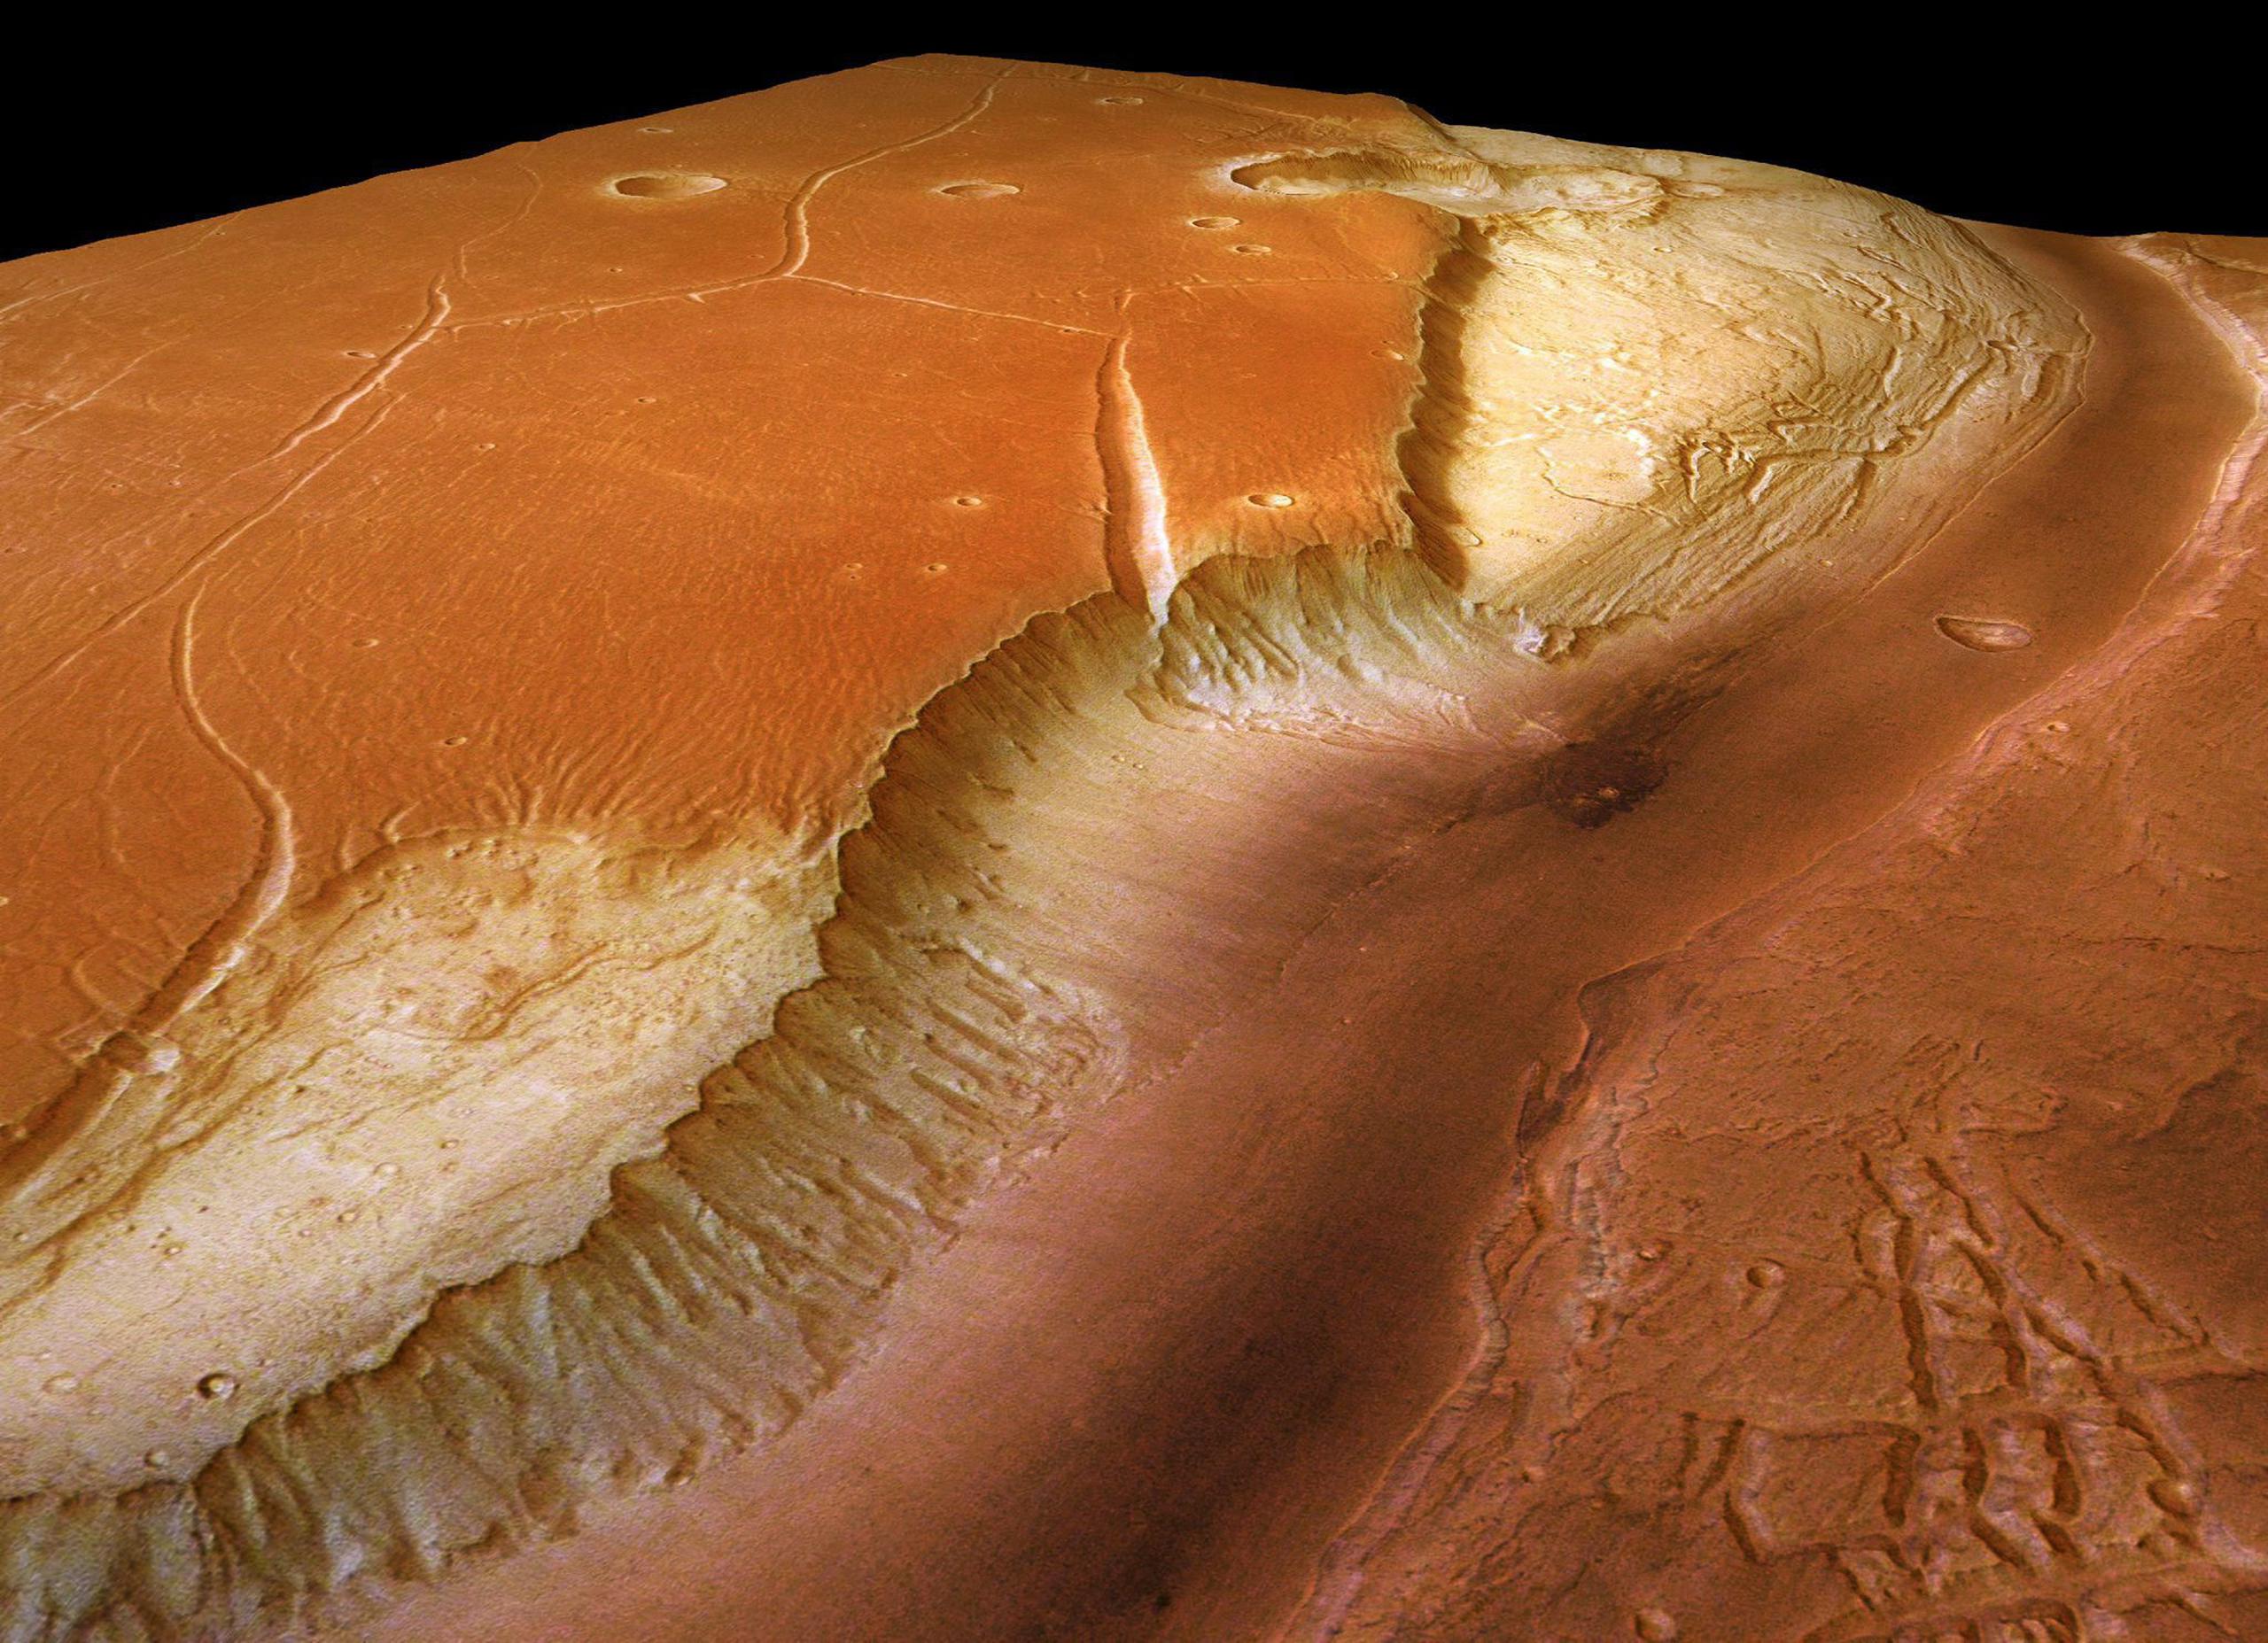 Fotografía del 1 de enero 2006 tomada por la nave espacial 'Mars Express' que muestra un gigantesco valle glacial en el planeta Marte. Es llamado 'Kasei Valles', tiene 2500 km de longitud y 500 km de ancho.